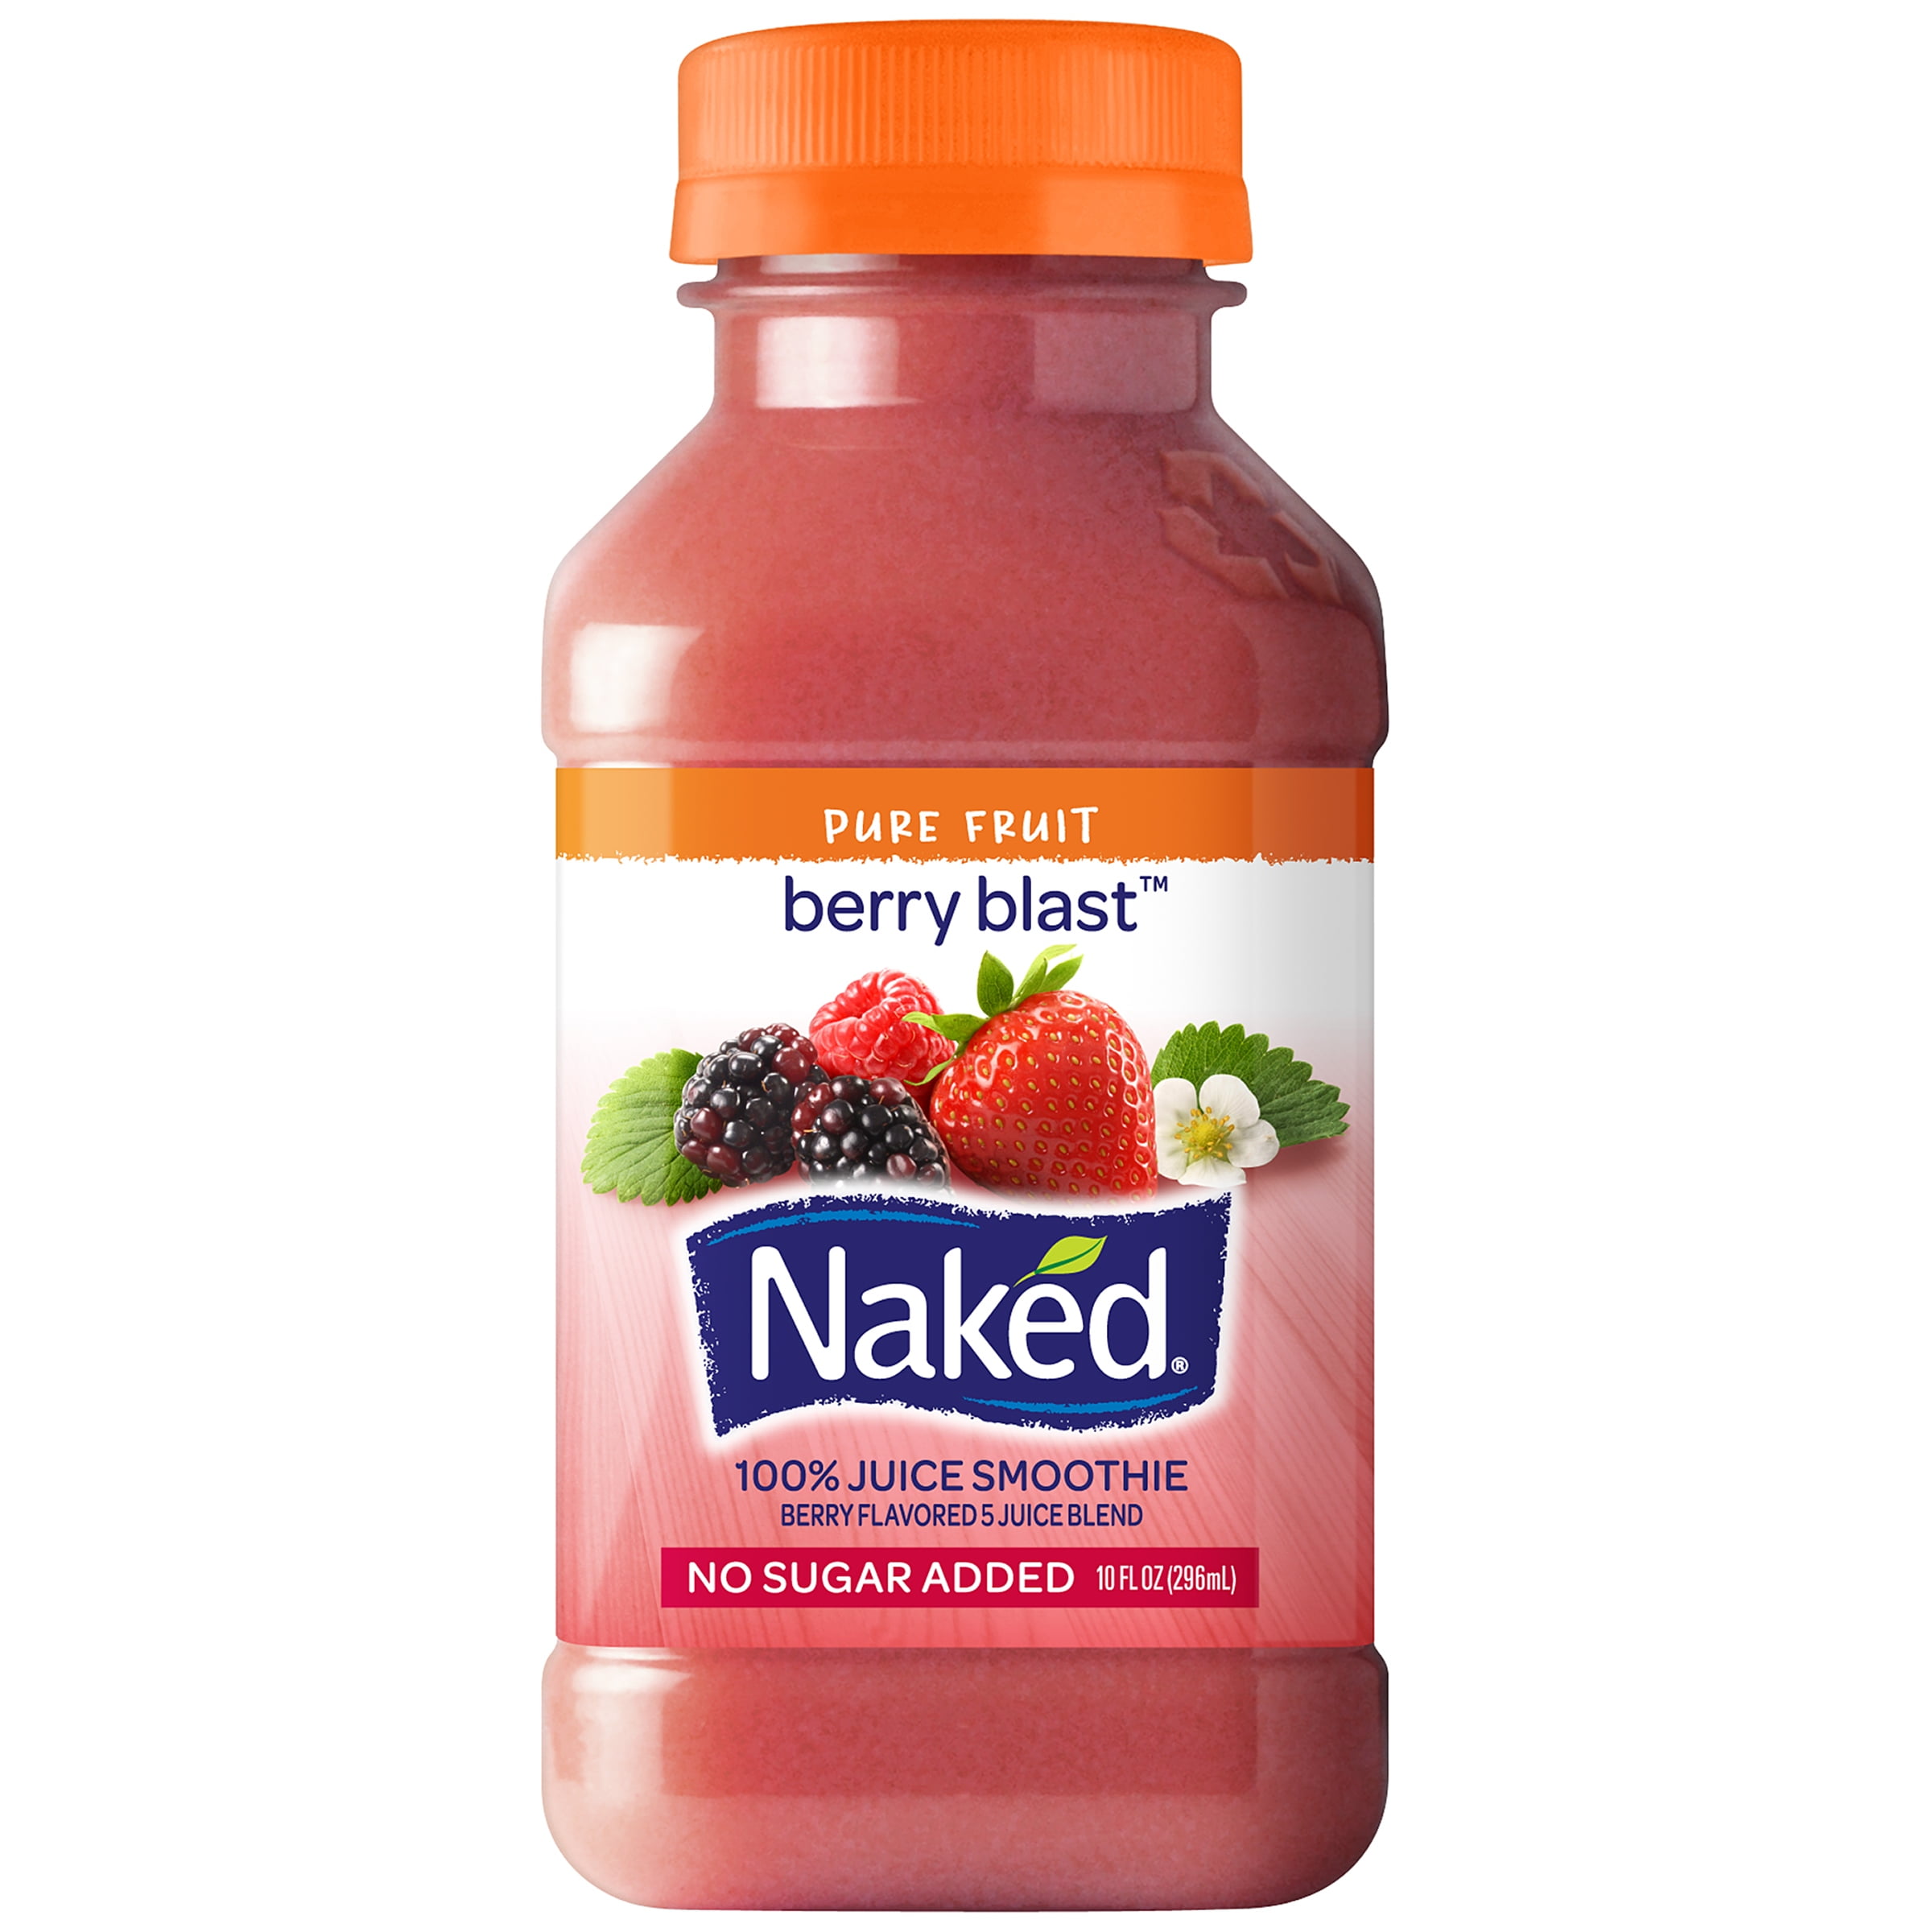 Naked Pure Fruit Berry Blast Juice Smoothie (15.2 fl oz.